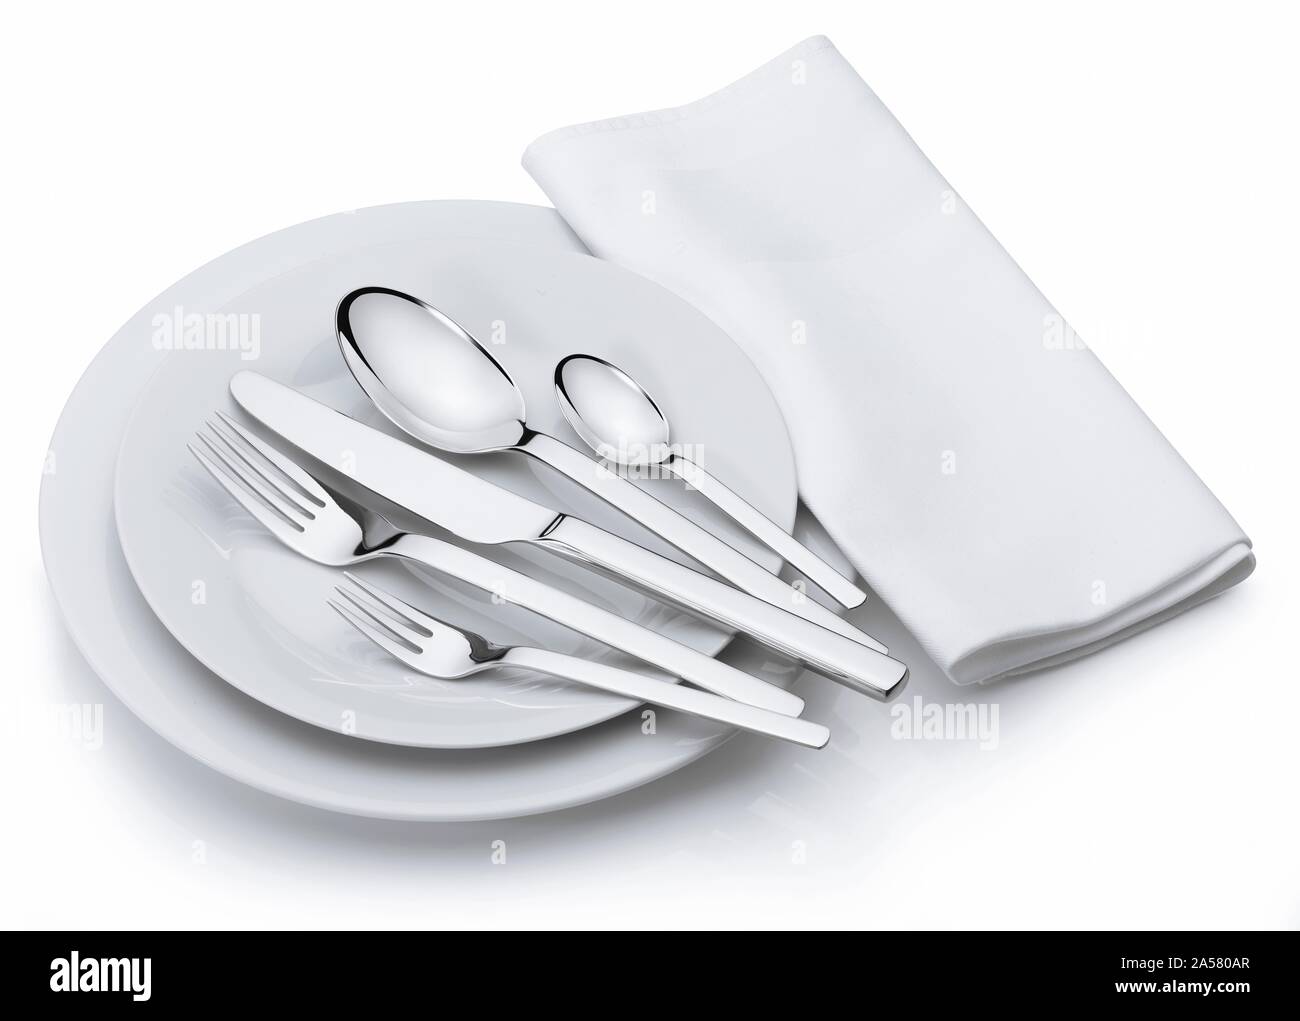 Besteck, Messer, Gabel, Löffel, Servietten, weiße Platten, studio Shot, Ausschnitt, weißer Hintergrund, Deutschland Stockfoto